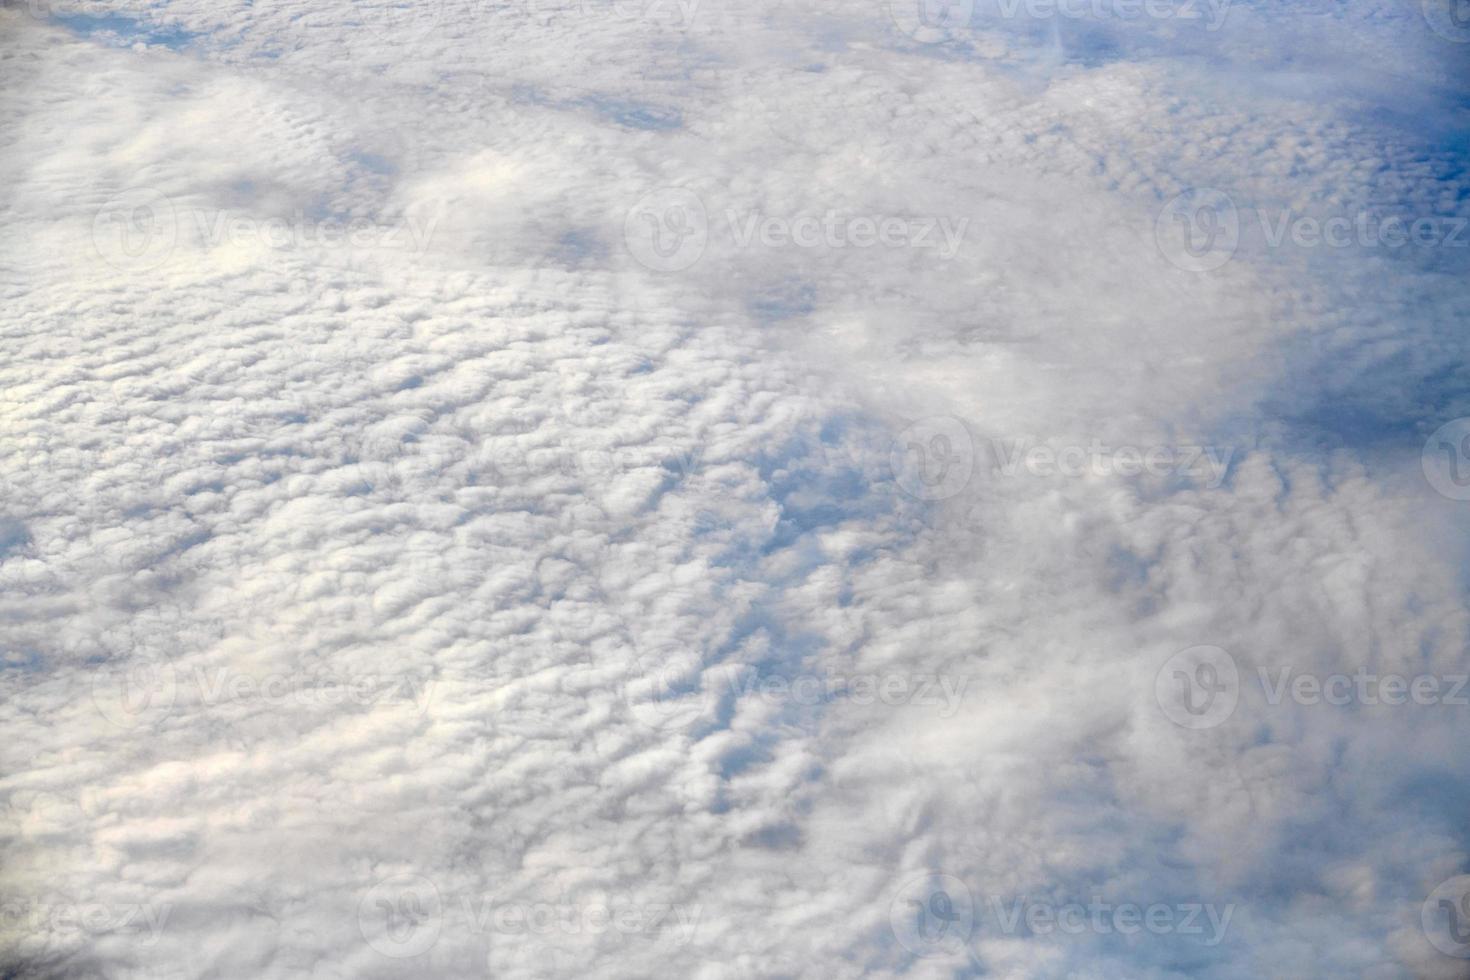 atemberaubender blick über die wolken aus dem flugzeugfenster, dicke weiße blaue wolken sehen aus wie weicher schaum foto